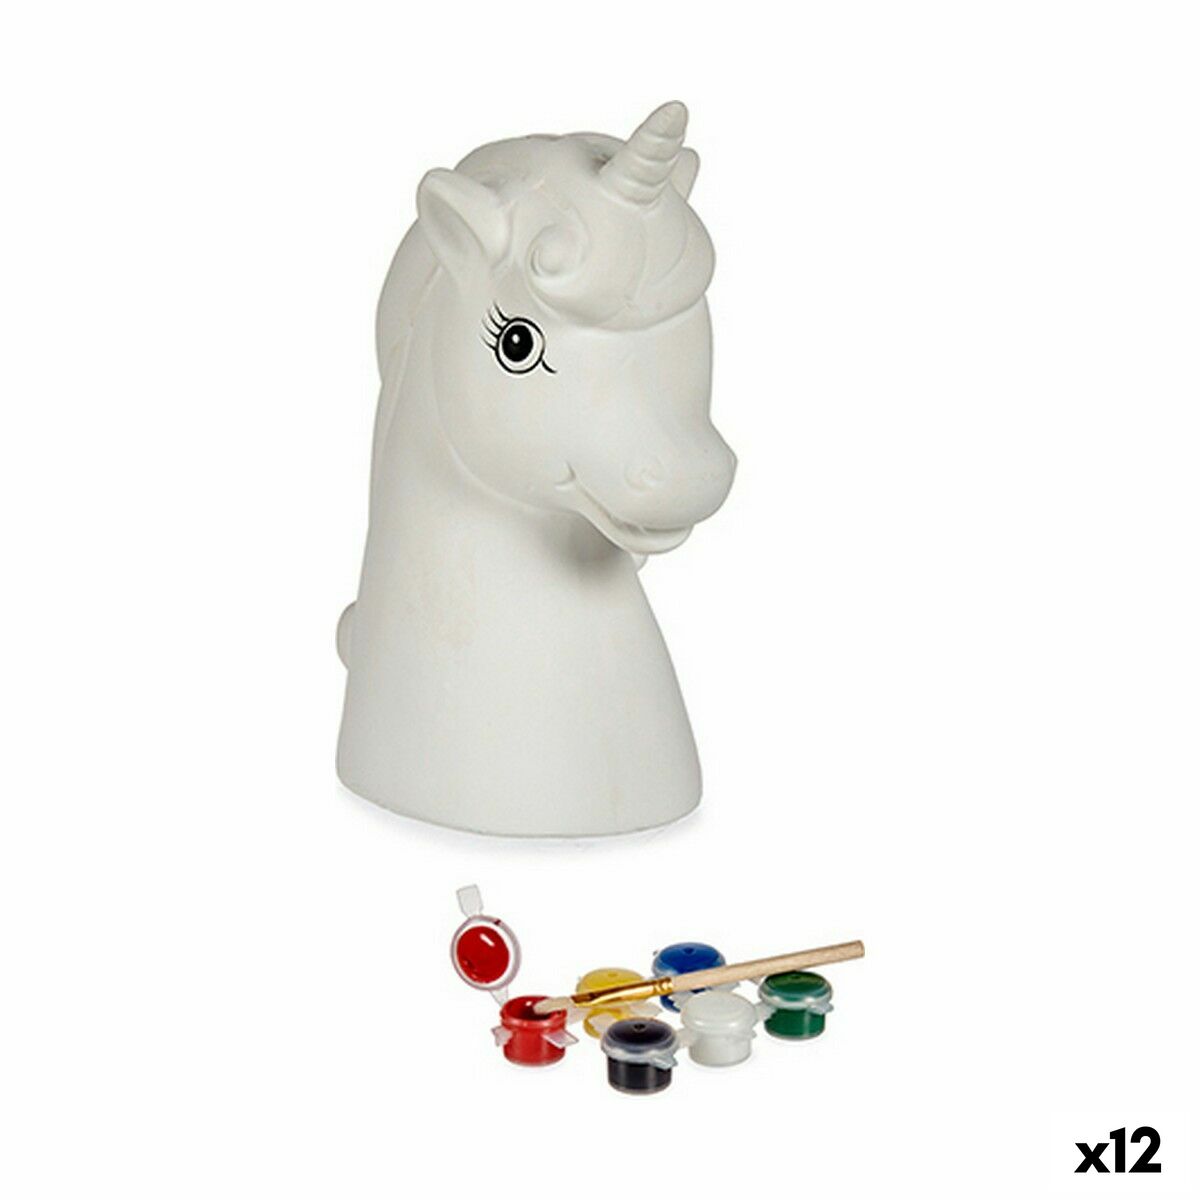 Salvadanaio da Dipingere Unicorno Ceramica 10 x 14,5 x 8,5 cm (12 Unità)